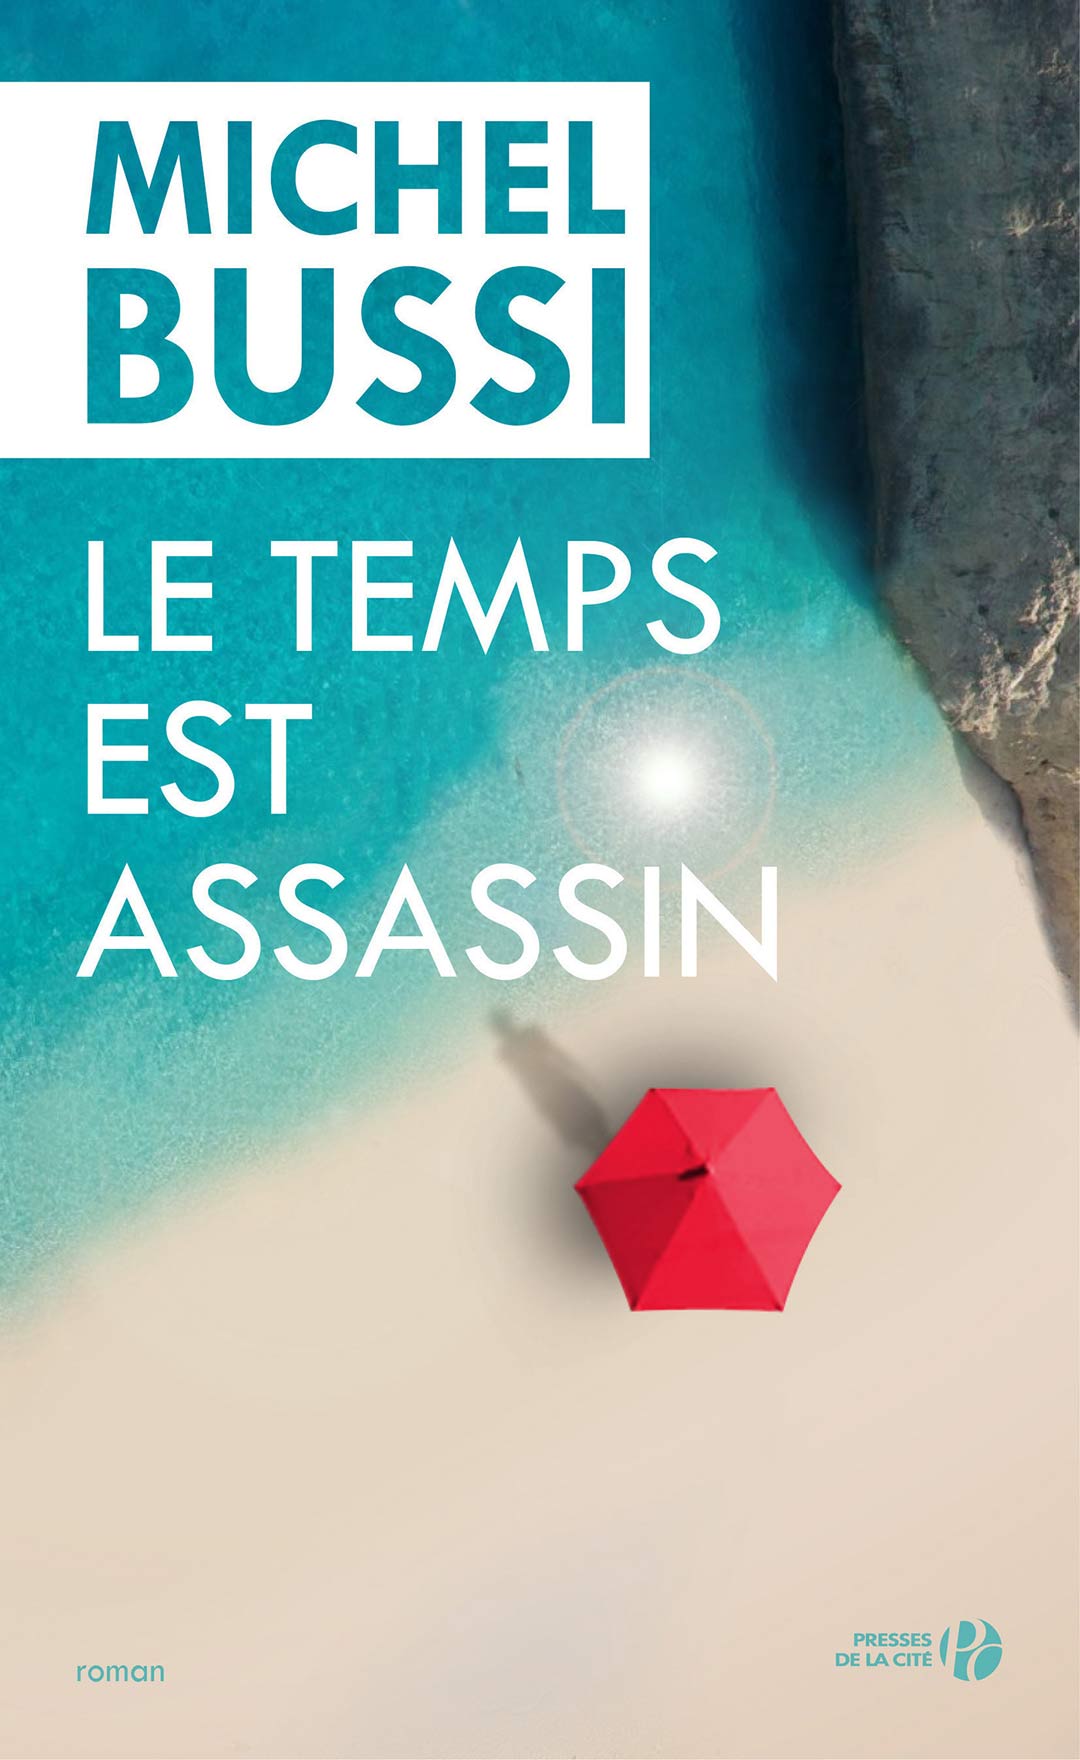 Bussi Michel - Le Temps est assassin скачать бесплатно